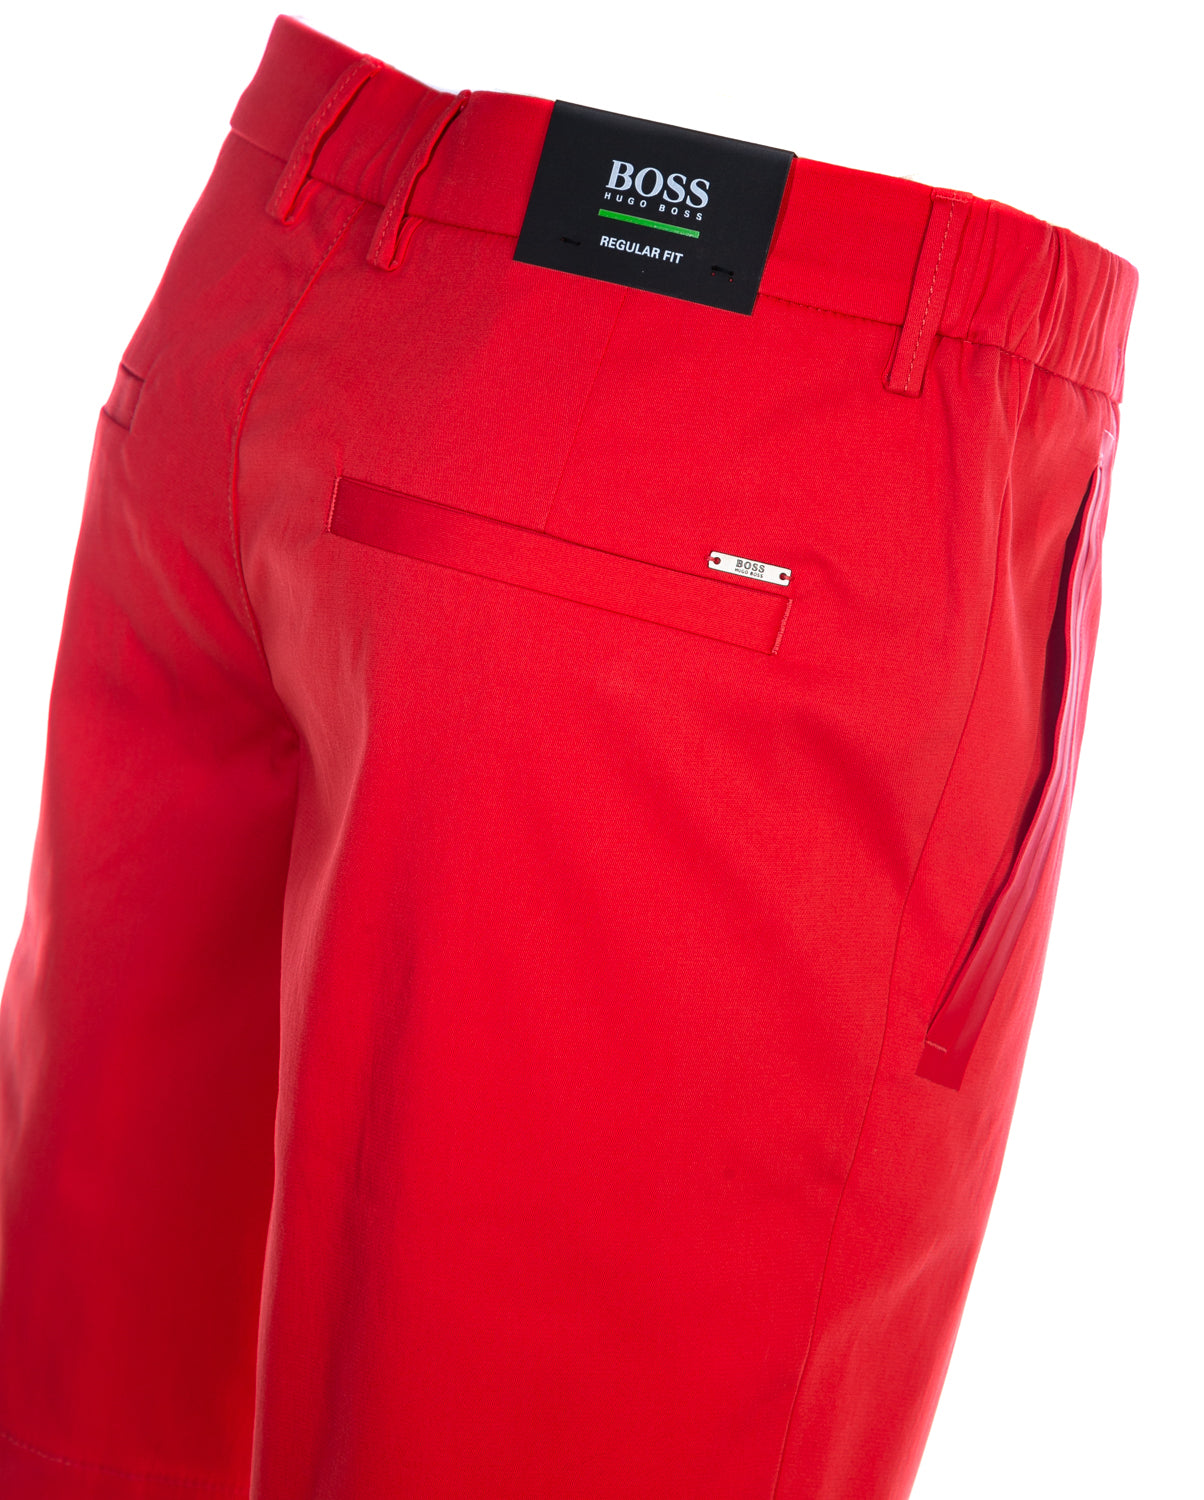 BOSS Liem4-10 Short in Bright Red